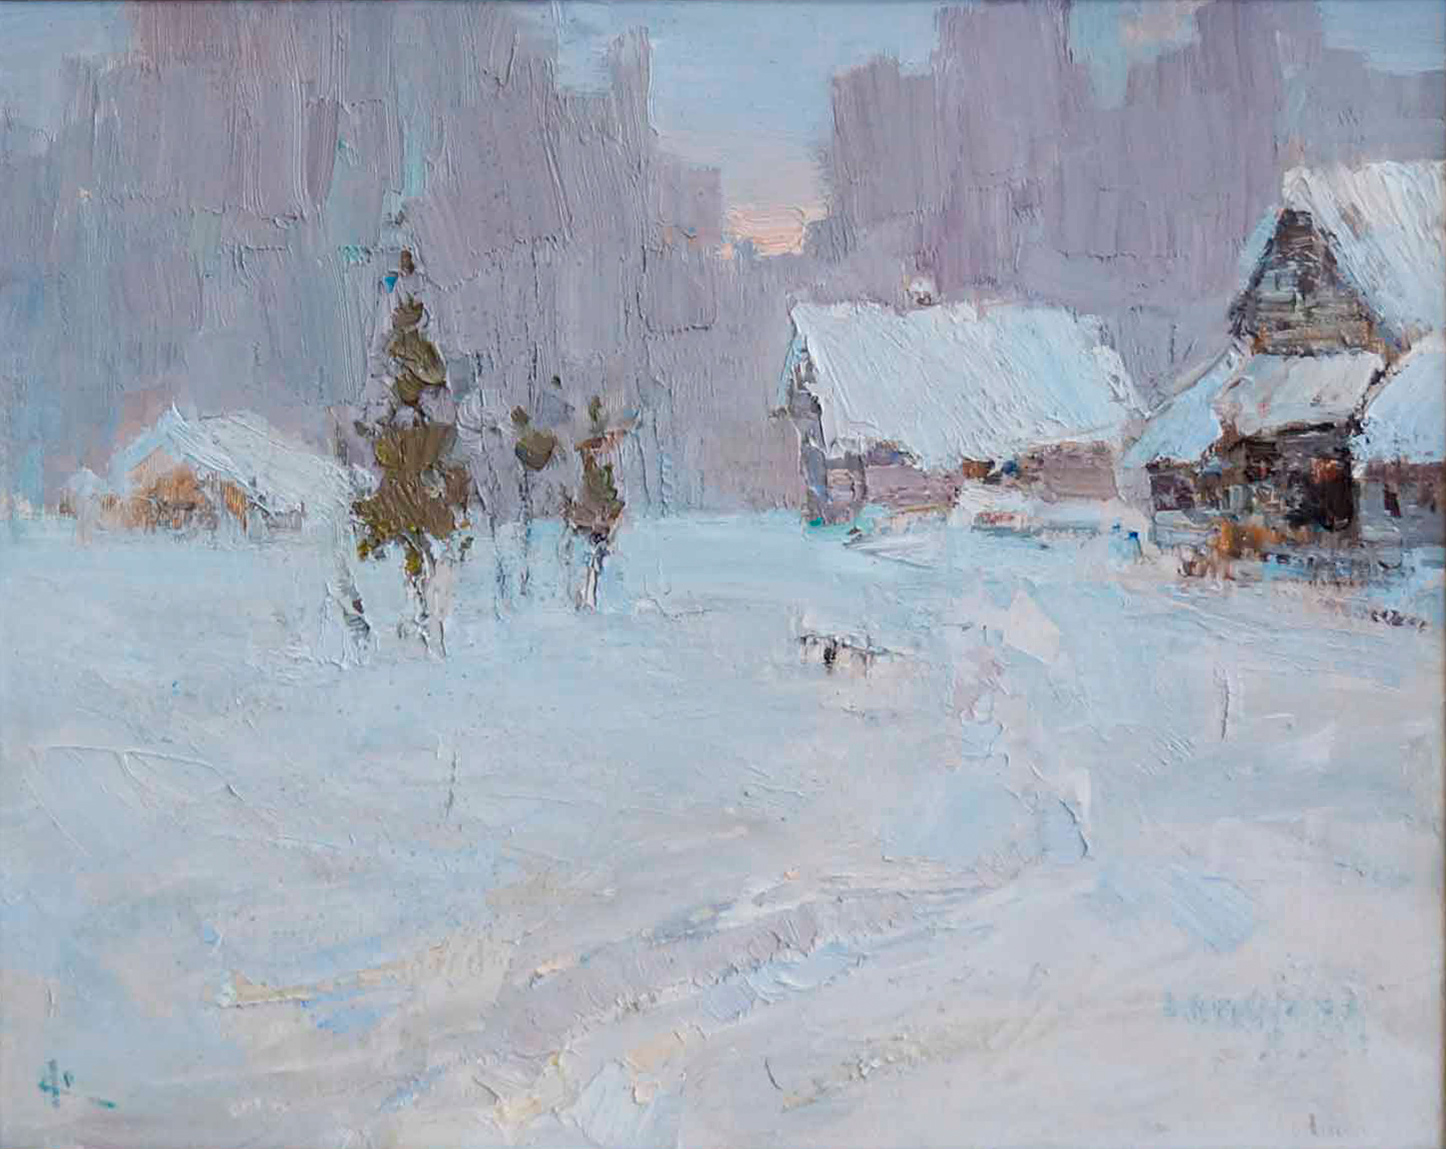 Frosty, Vyacheslav Korolenkov, Buy the painting Oil